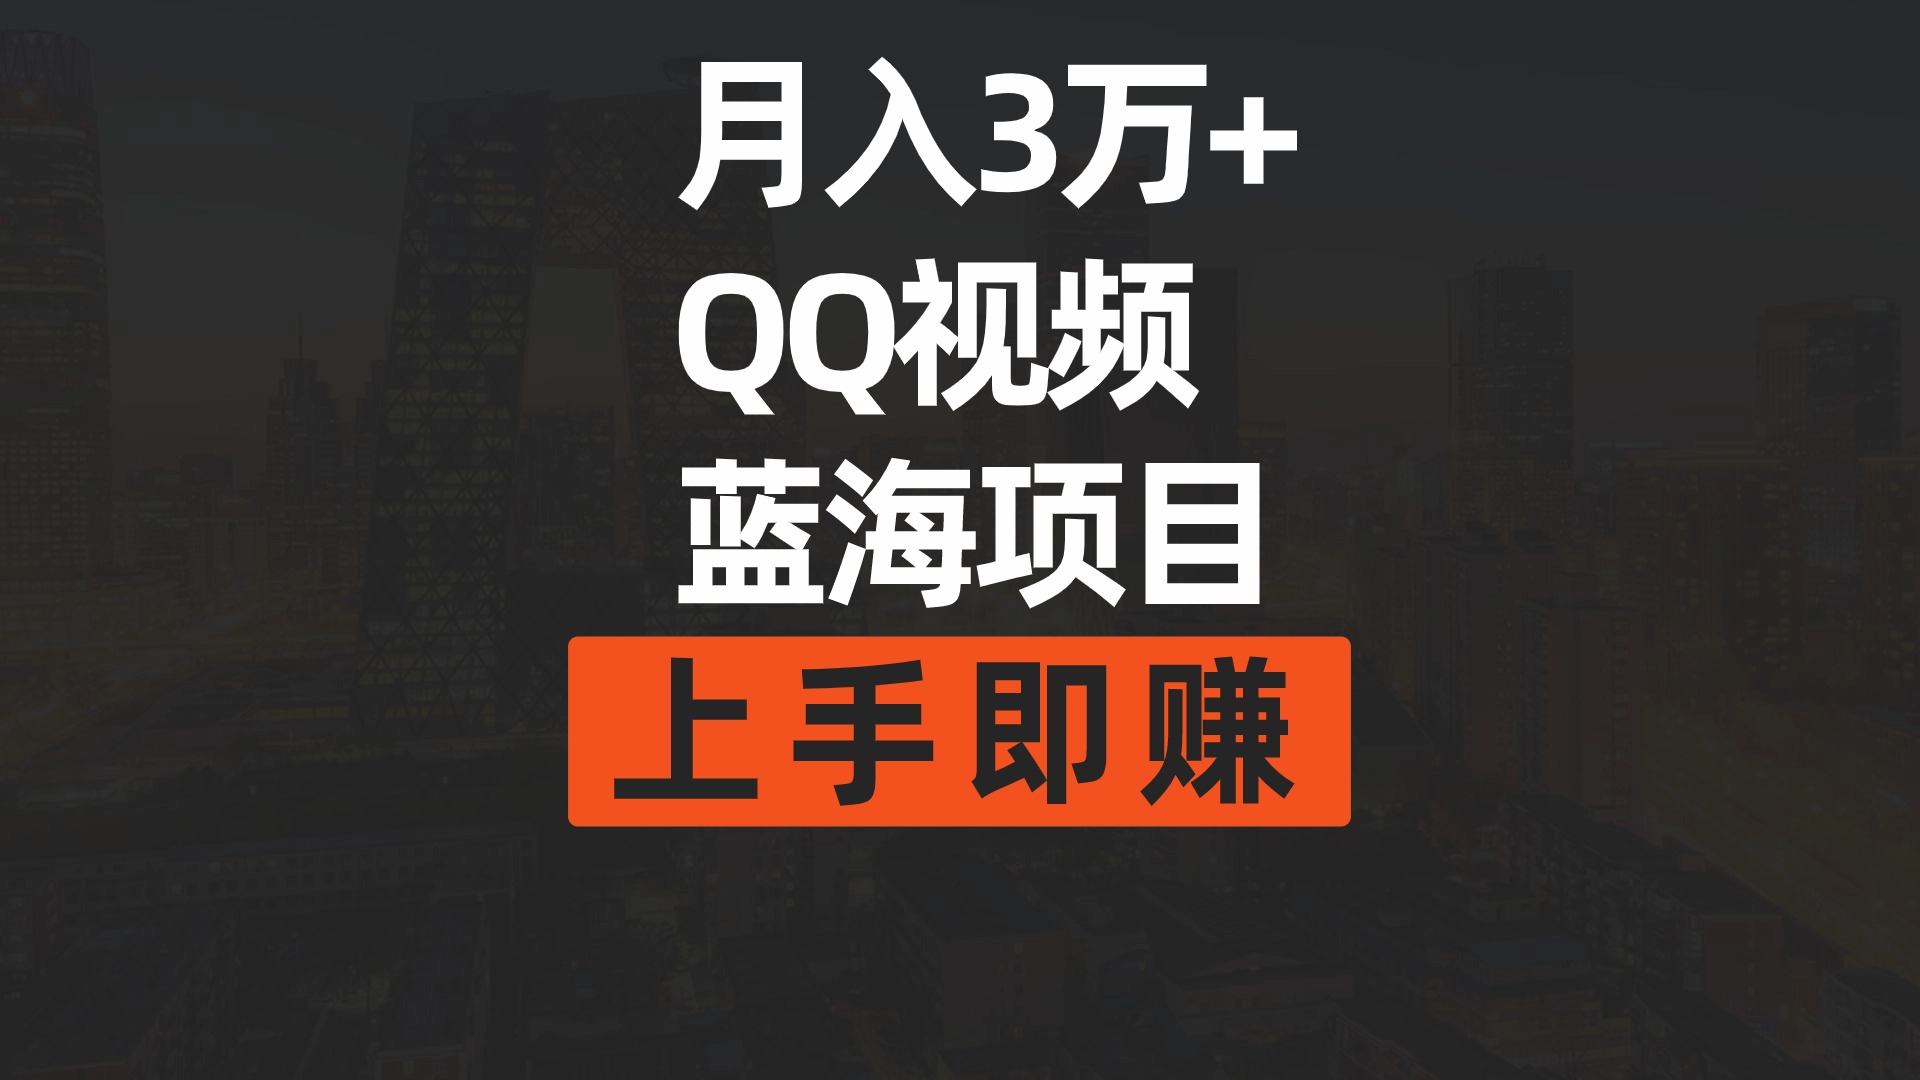 (9503期)月入3万+ 简单搬运去重QQ视频蓝海赛道  上手即赚